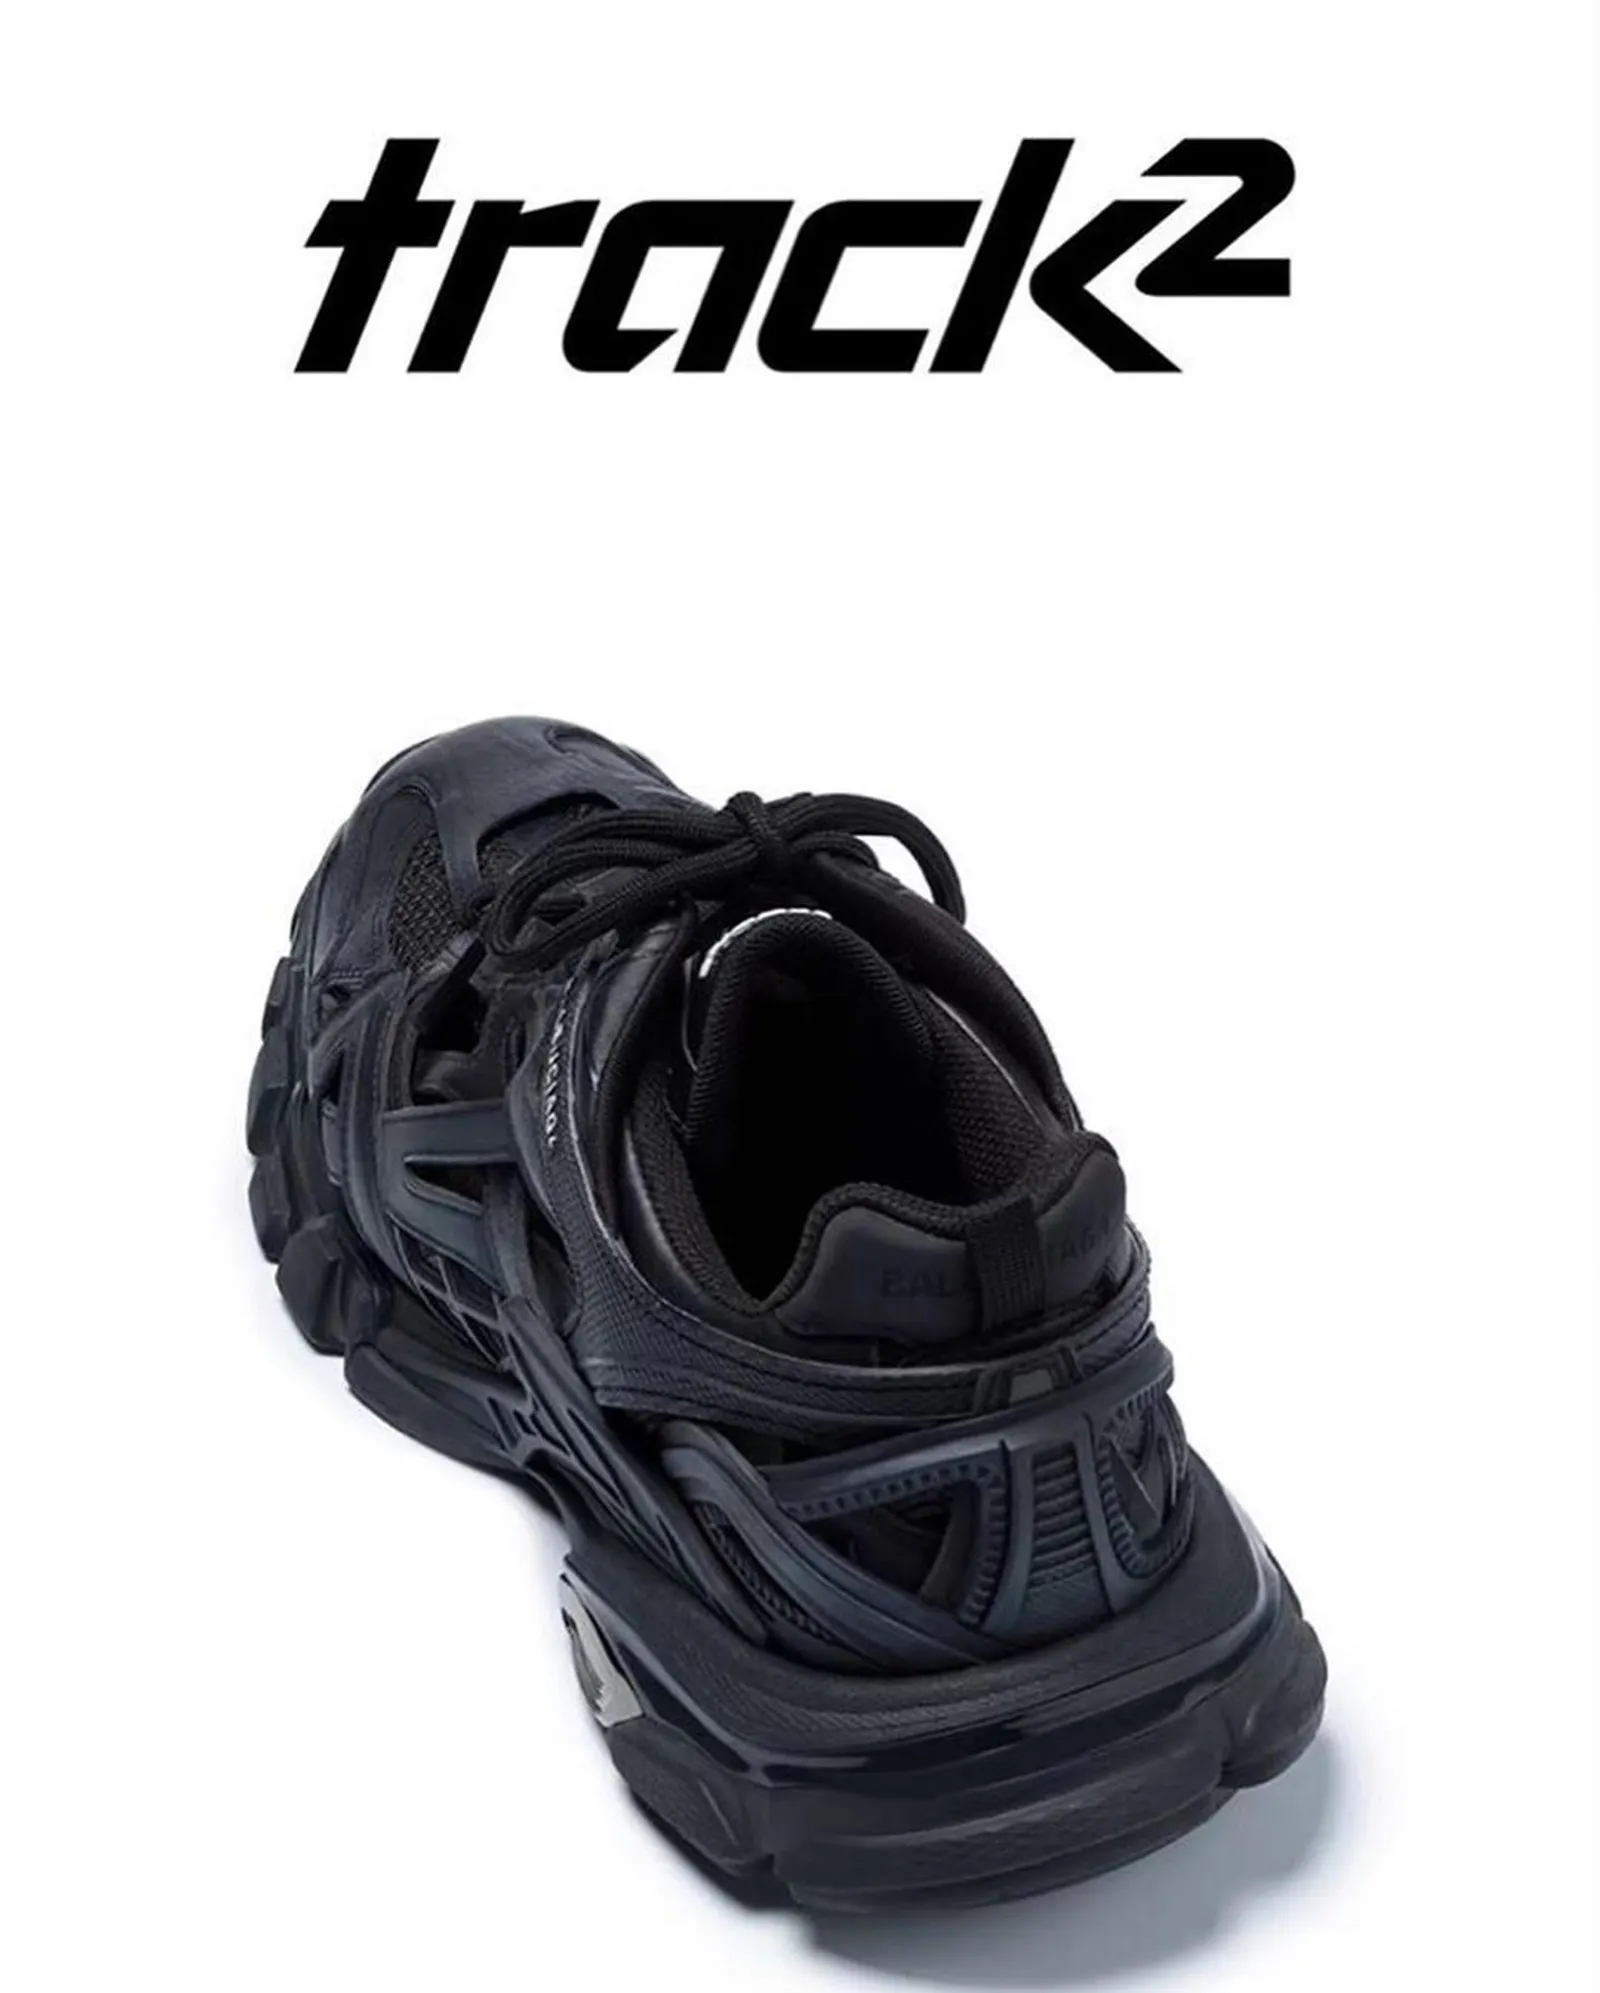 Detail Keren dari Sepatu Trainer Balenciaga Track.2!